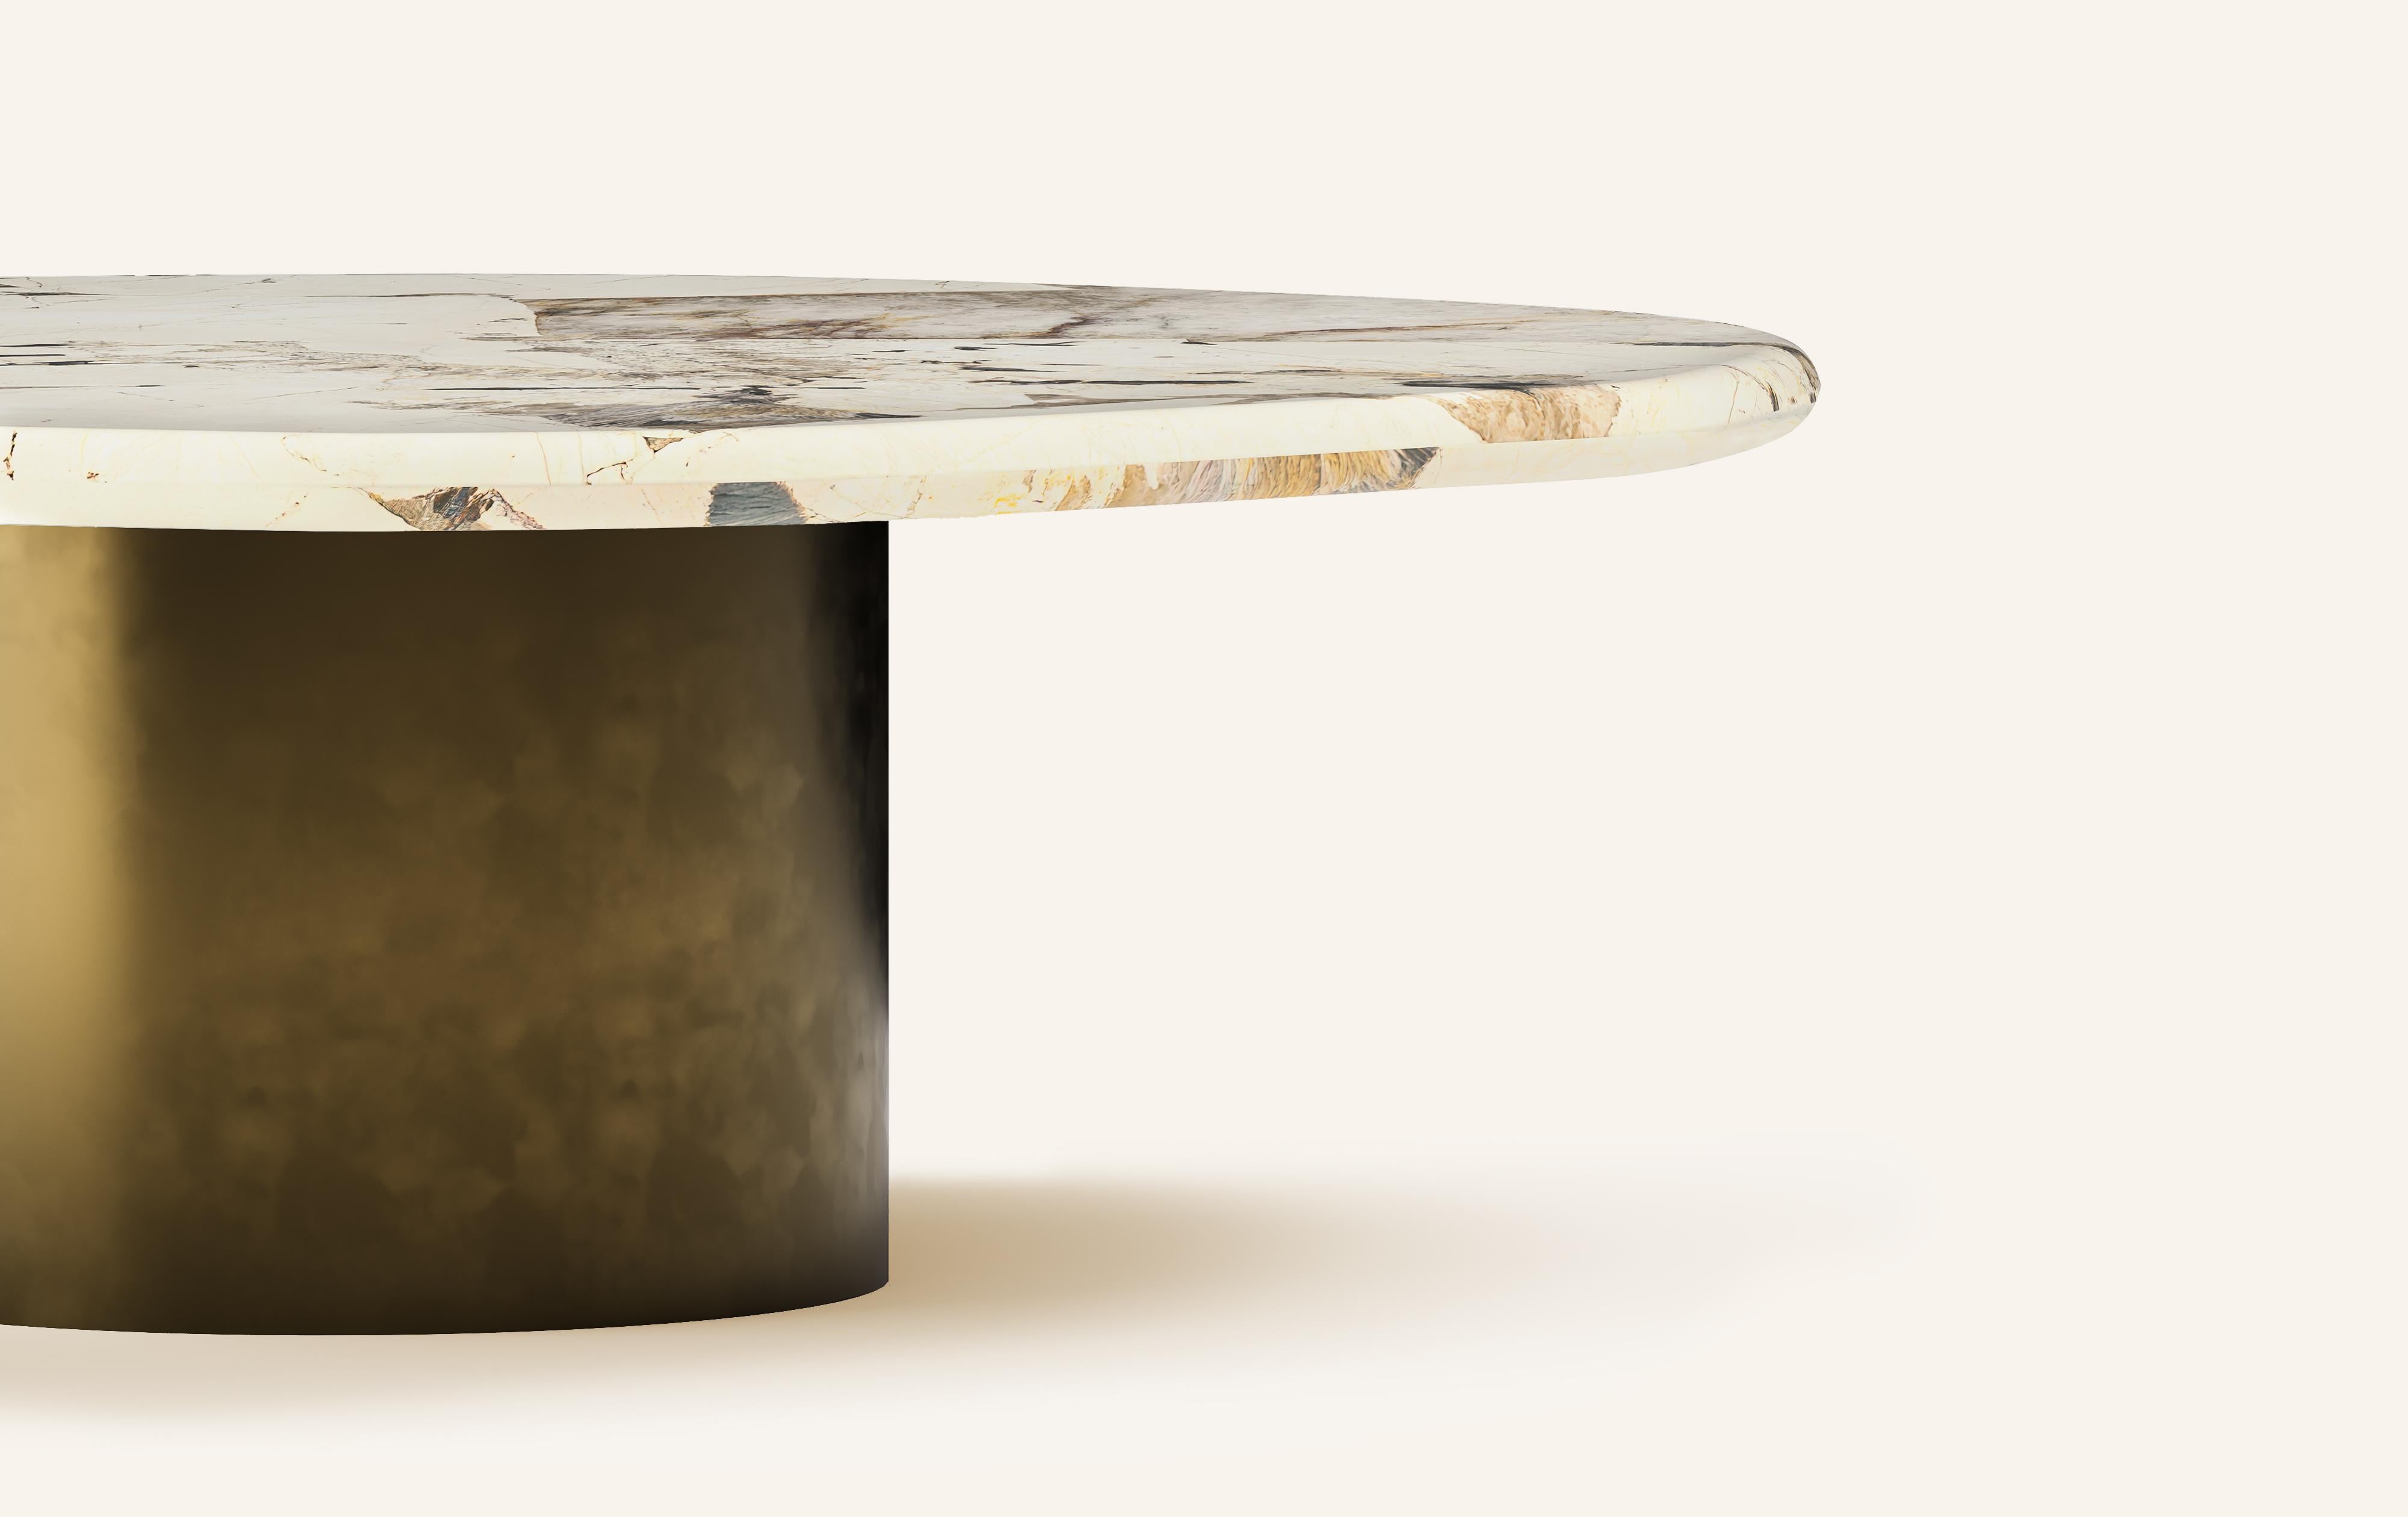 Organic Modern FORM(LA) Lago Round Coffee Table 42”L x 42”W x 14”H Quartzite & Antique Bronze For Sale